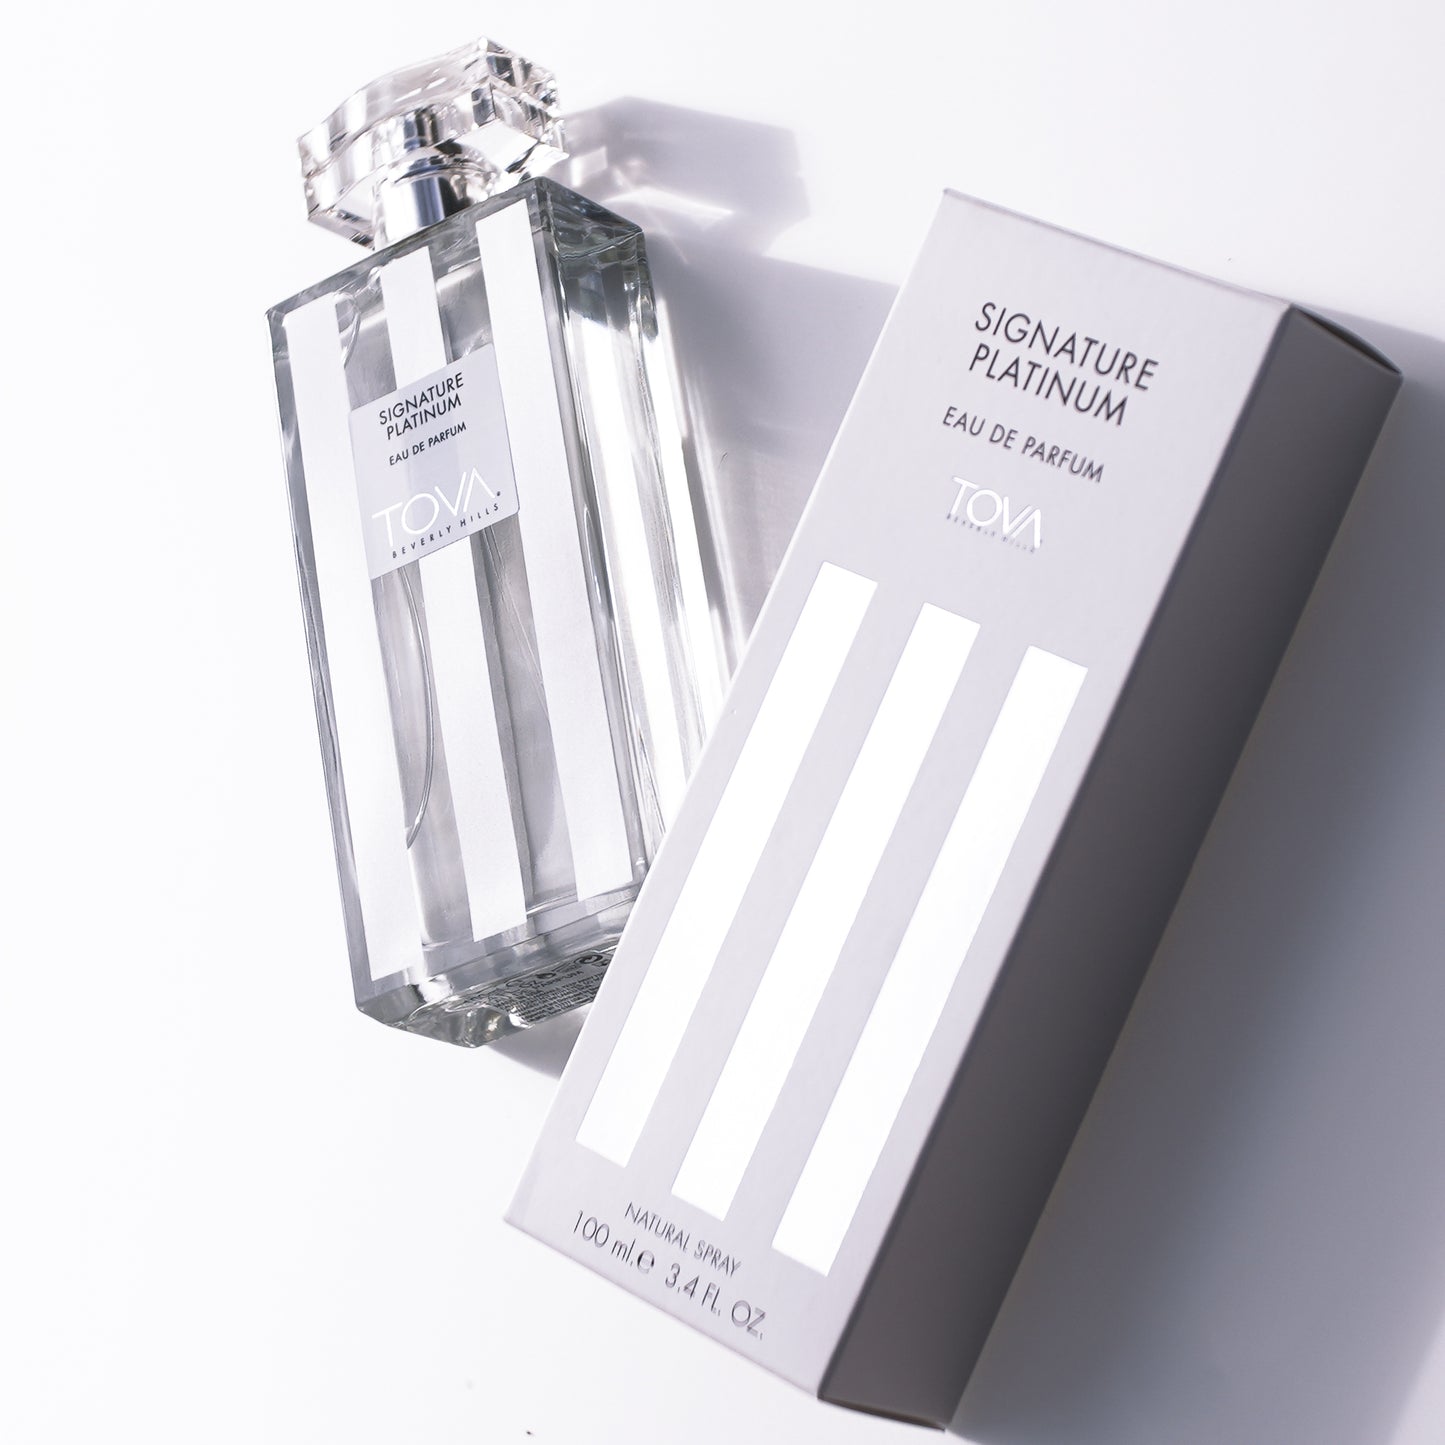 Signature Platinum Limited Edition Eau de Parfum 3.4 fl oz